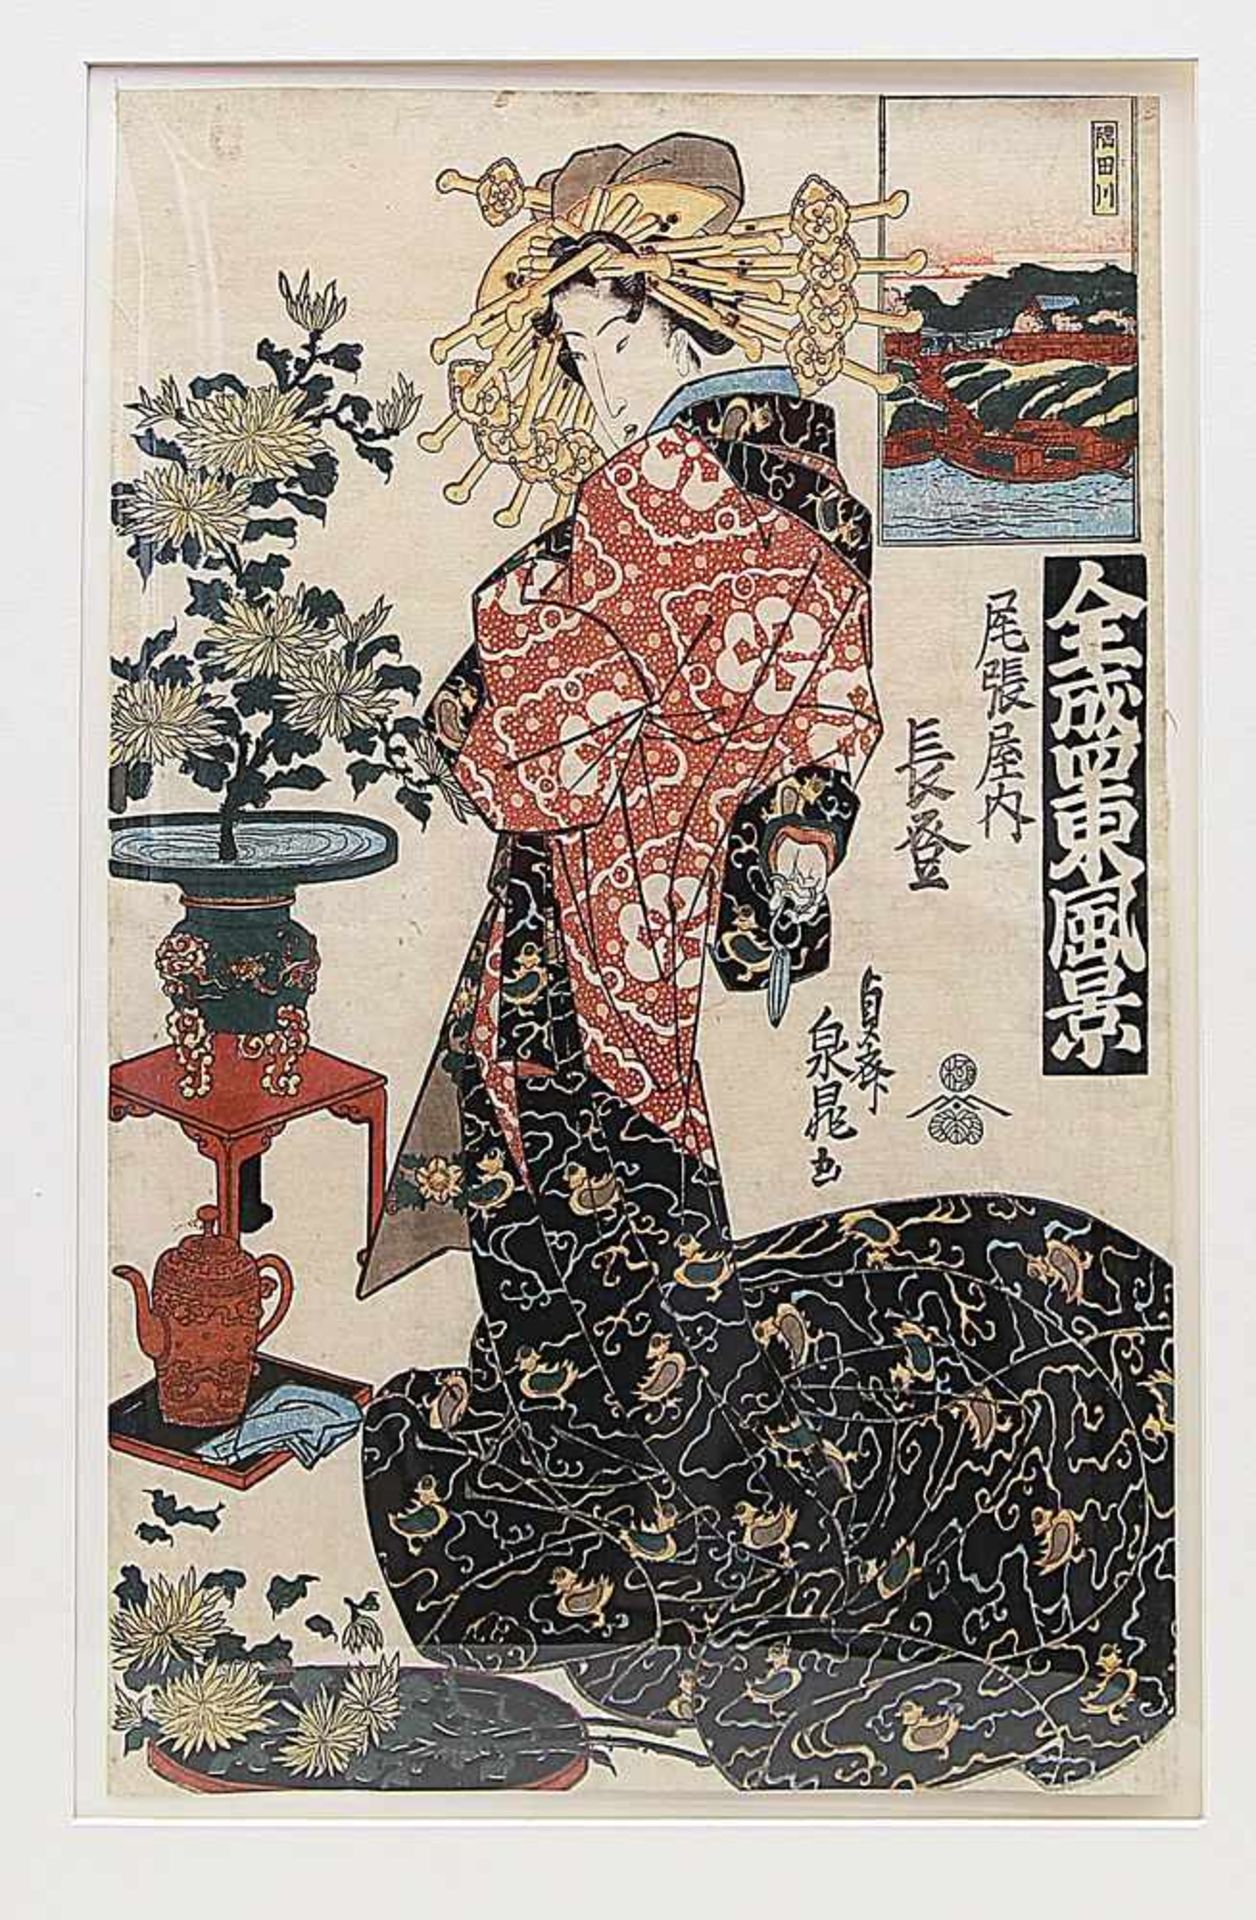 Sencho, Sencho (ca. 1830-1850)Darstellung einer "oiran Nagato (hochstehende Kurtisane)", Blatt aus